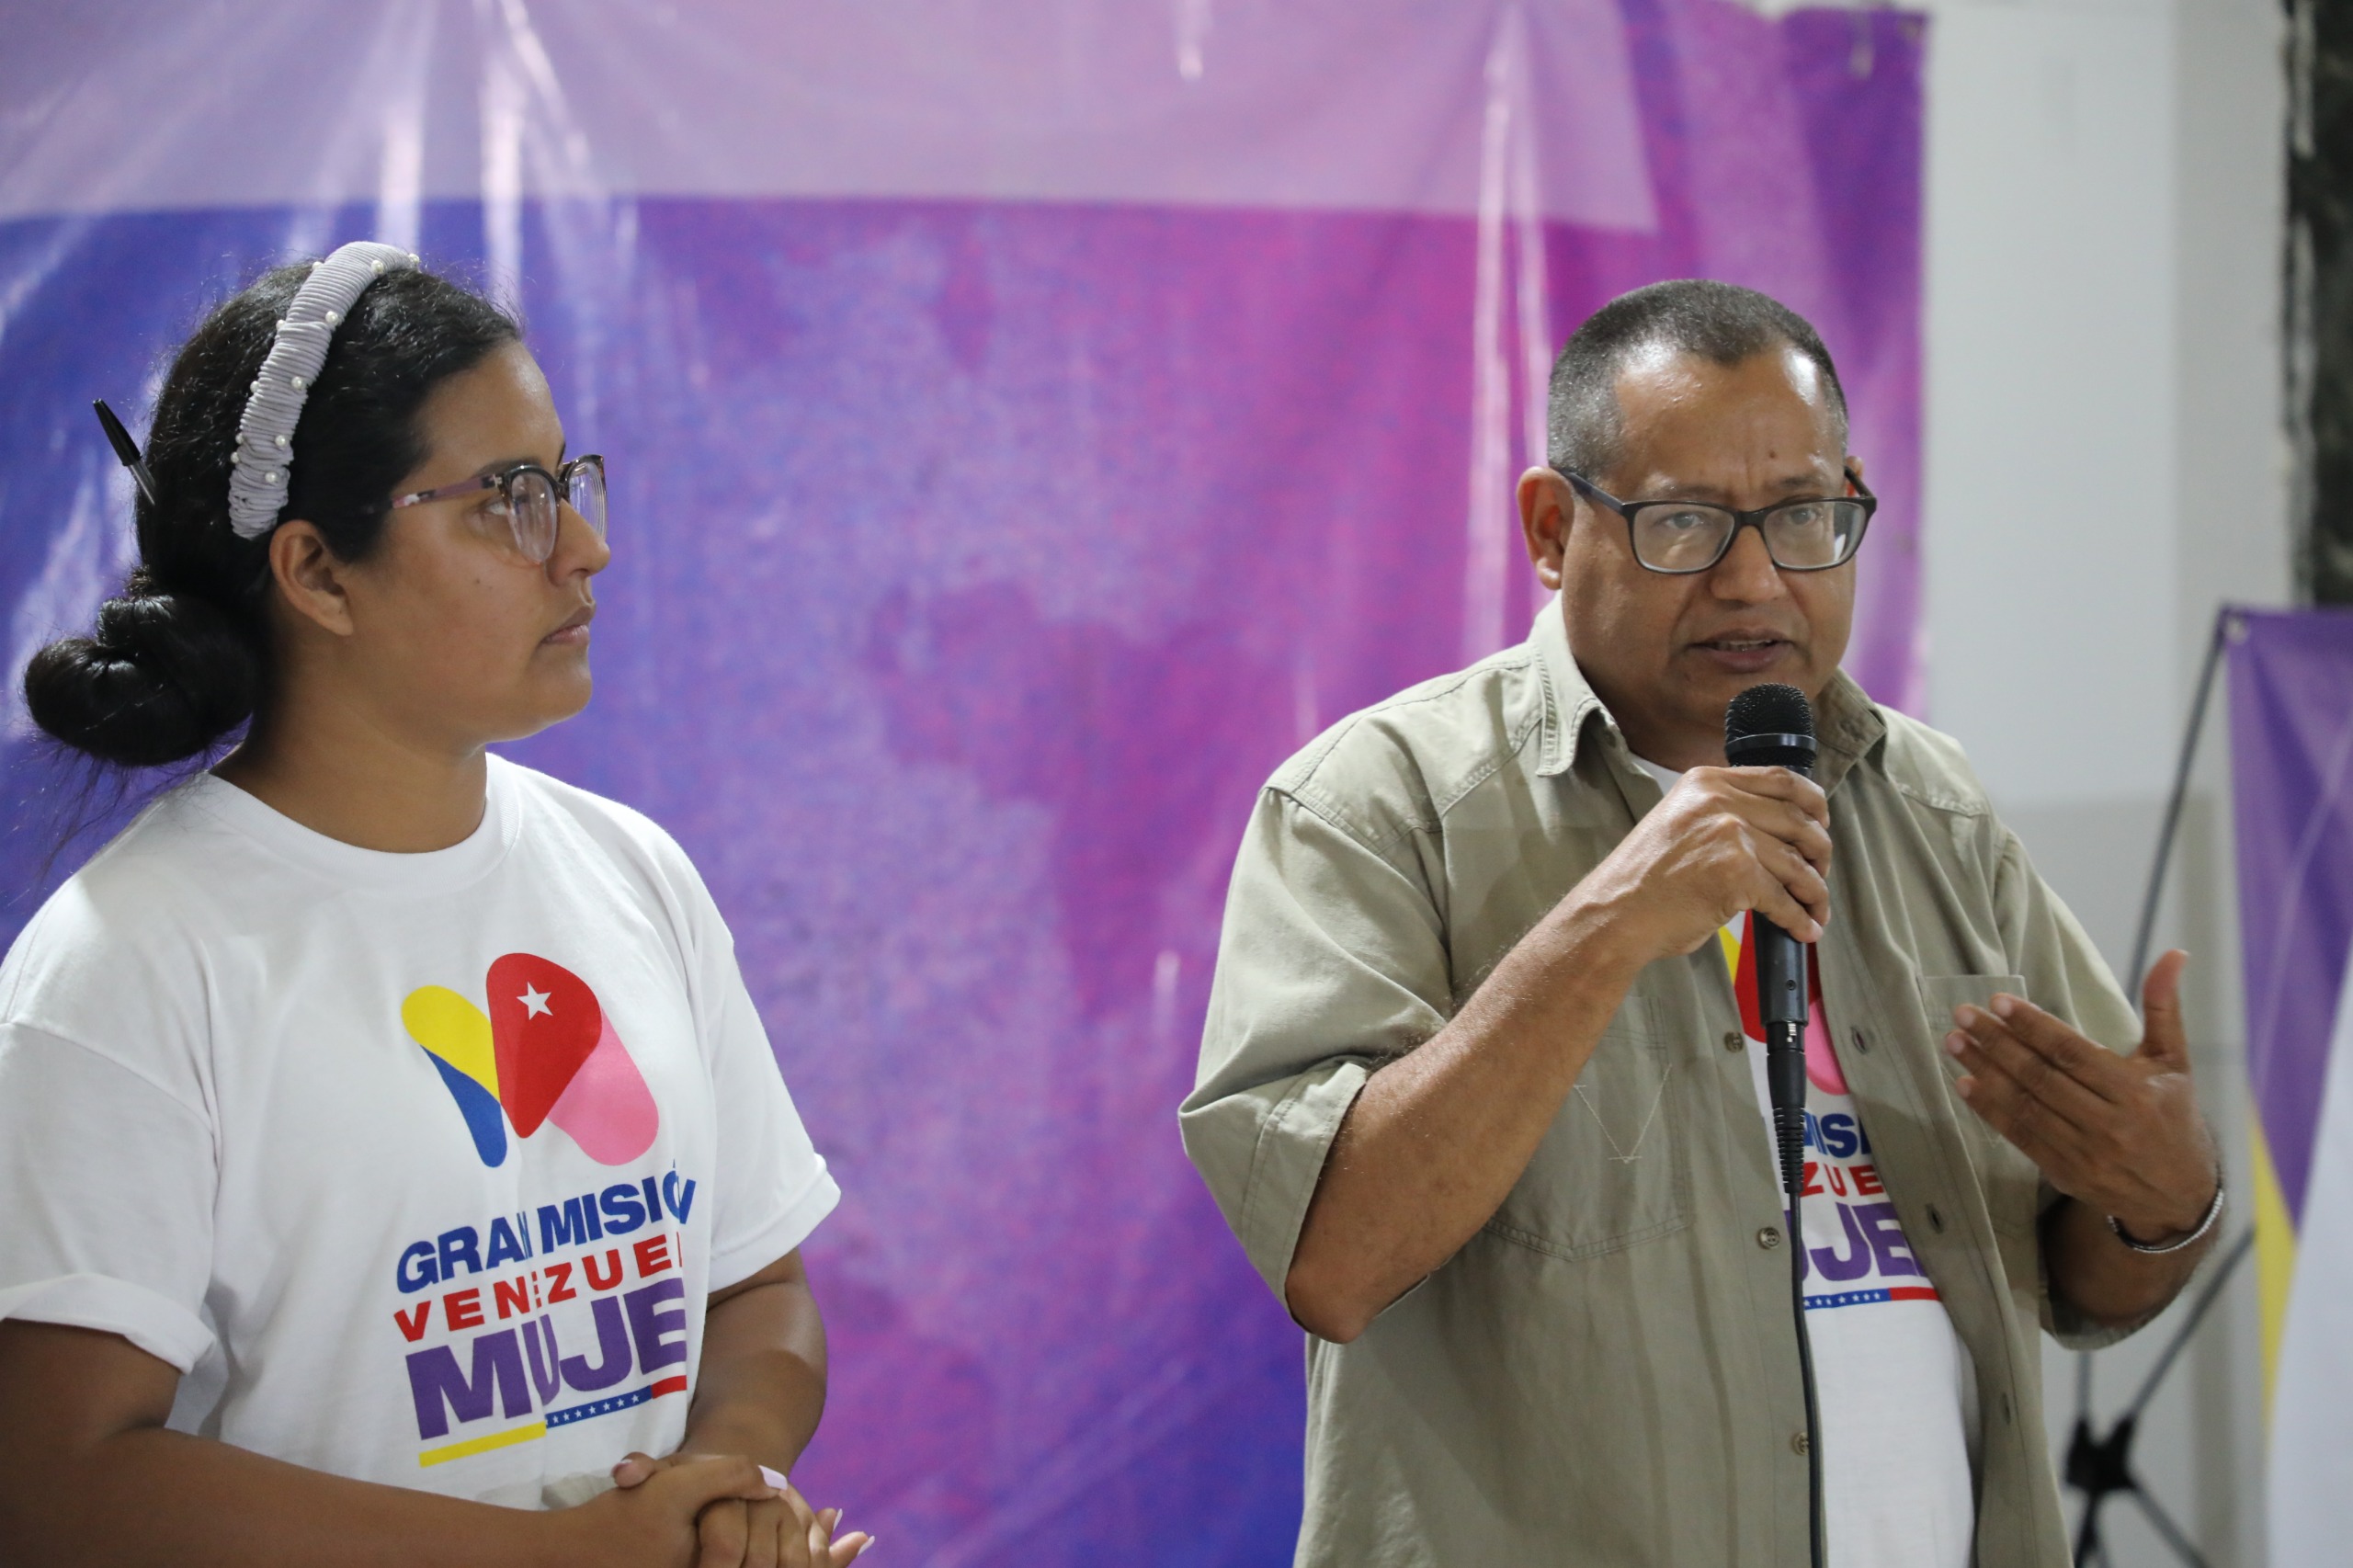 En este momento estás viendo Movimientos juveniles presentan aportes para fortalecer la Gran Misión Venezuela Mujer